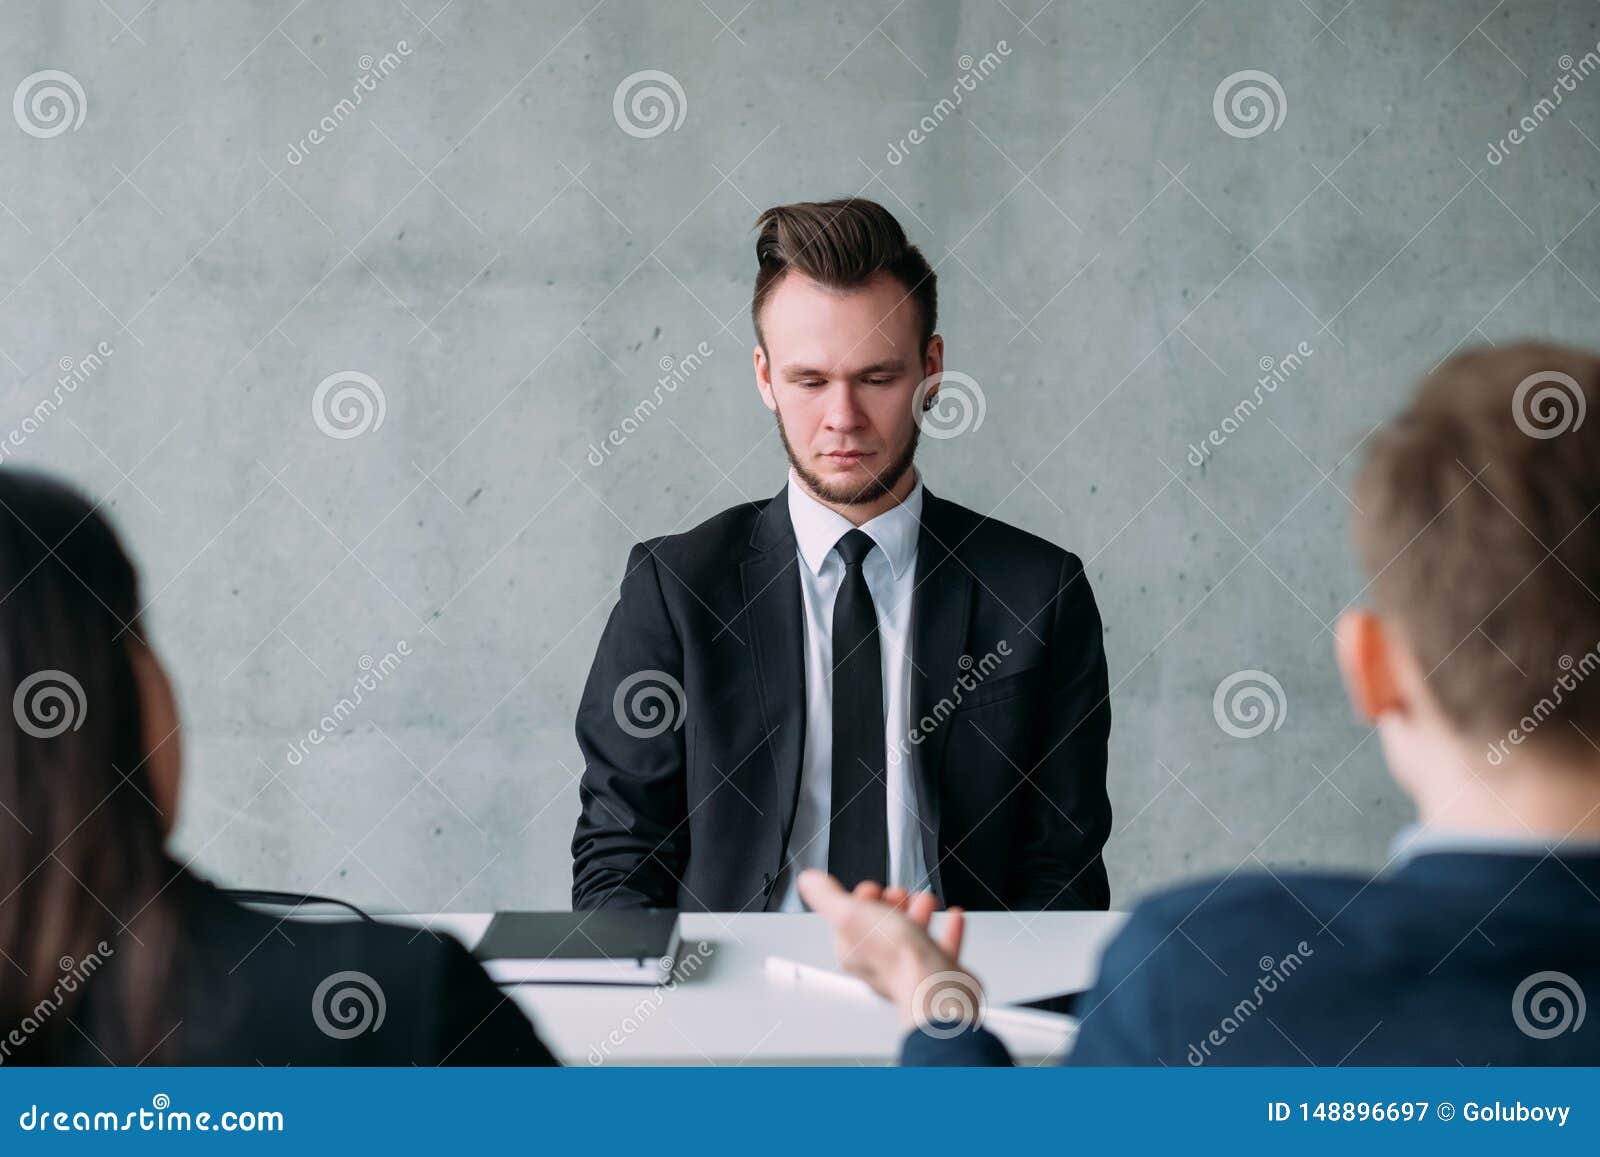 Job interview facial expressions